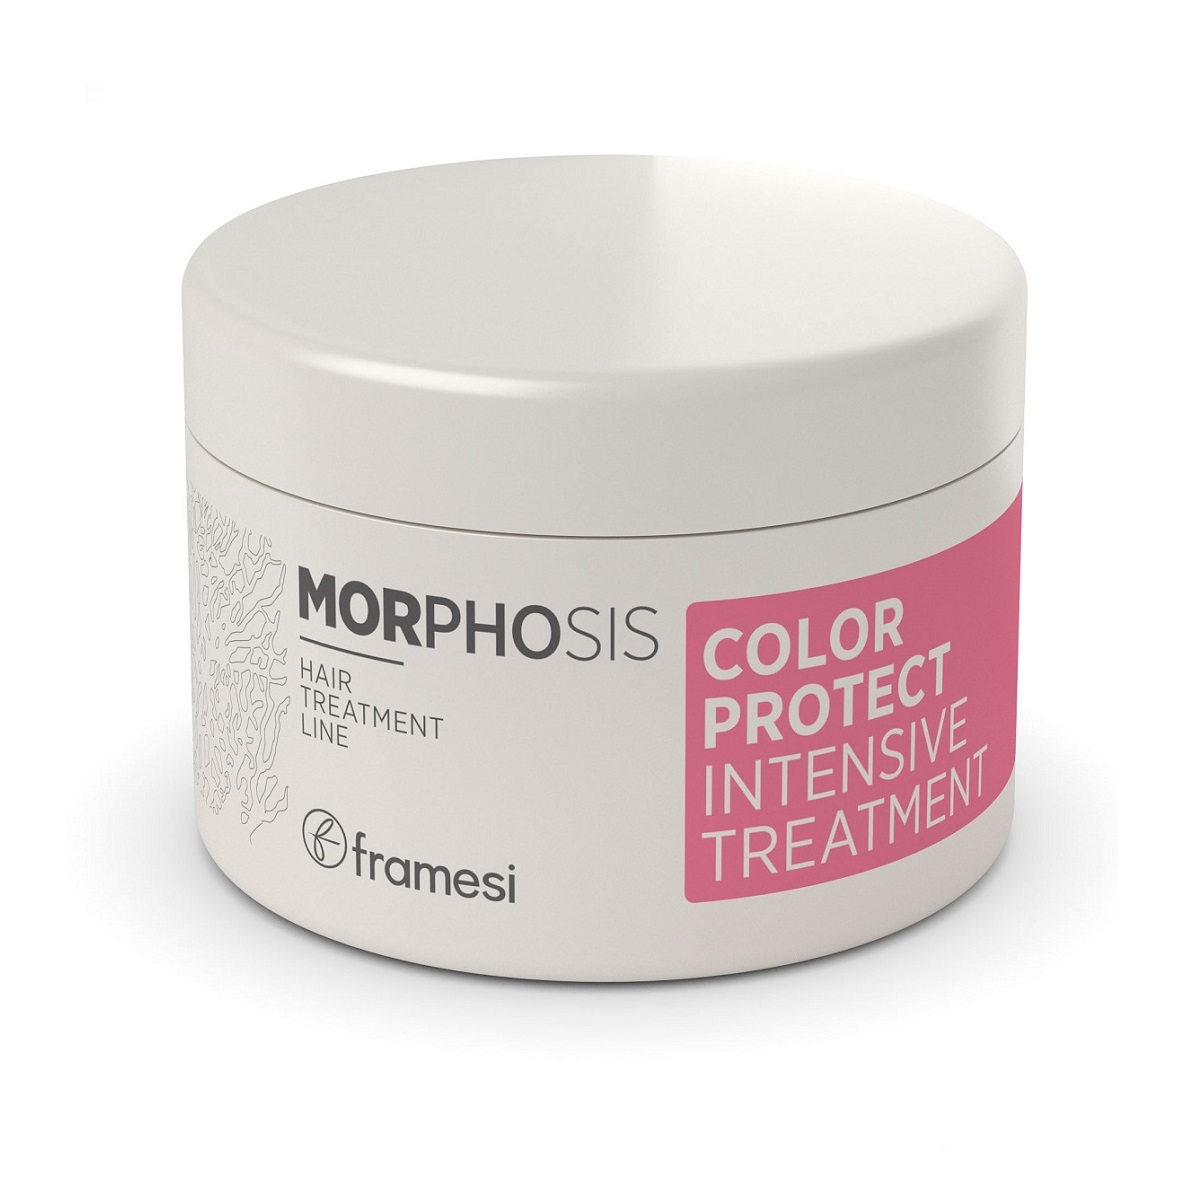 FRAMESI Маска для окрашенных волос интенсивного действия Color Protect Intensive Treatment, 200 мл (FRAMESI, Morphosis)